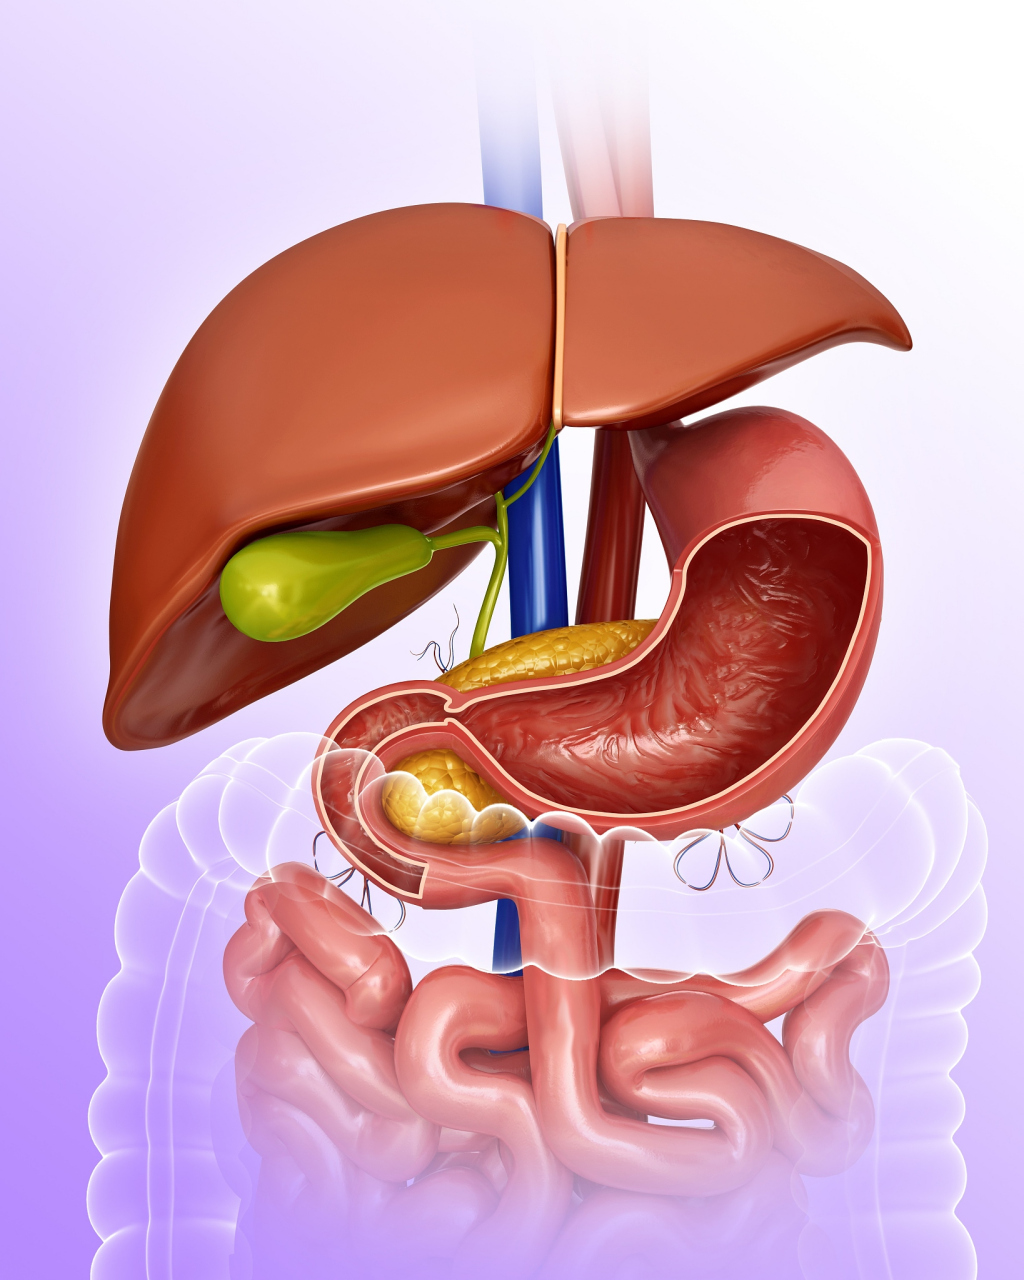 胆管位置图片